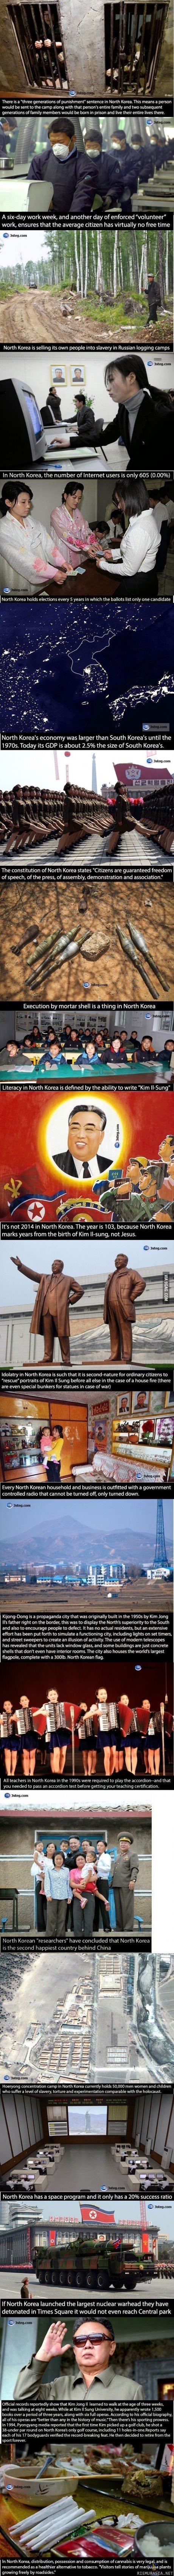 Pohjois-Korea - Iloinen valtio missä ihmisillä on kaikki hyvin.